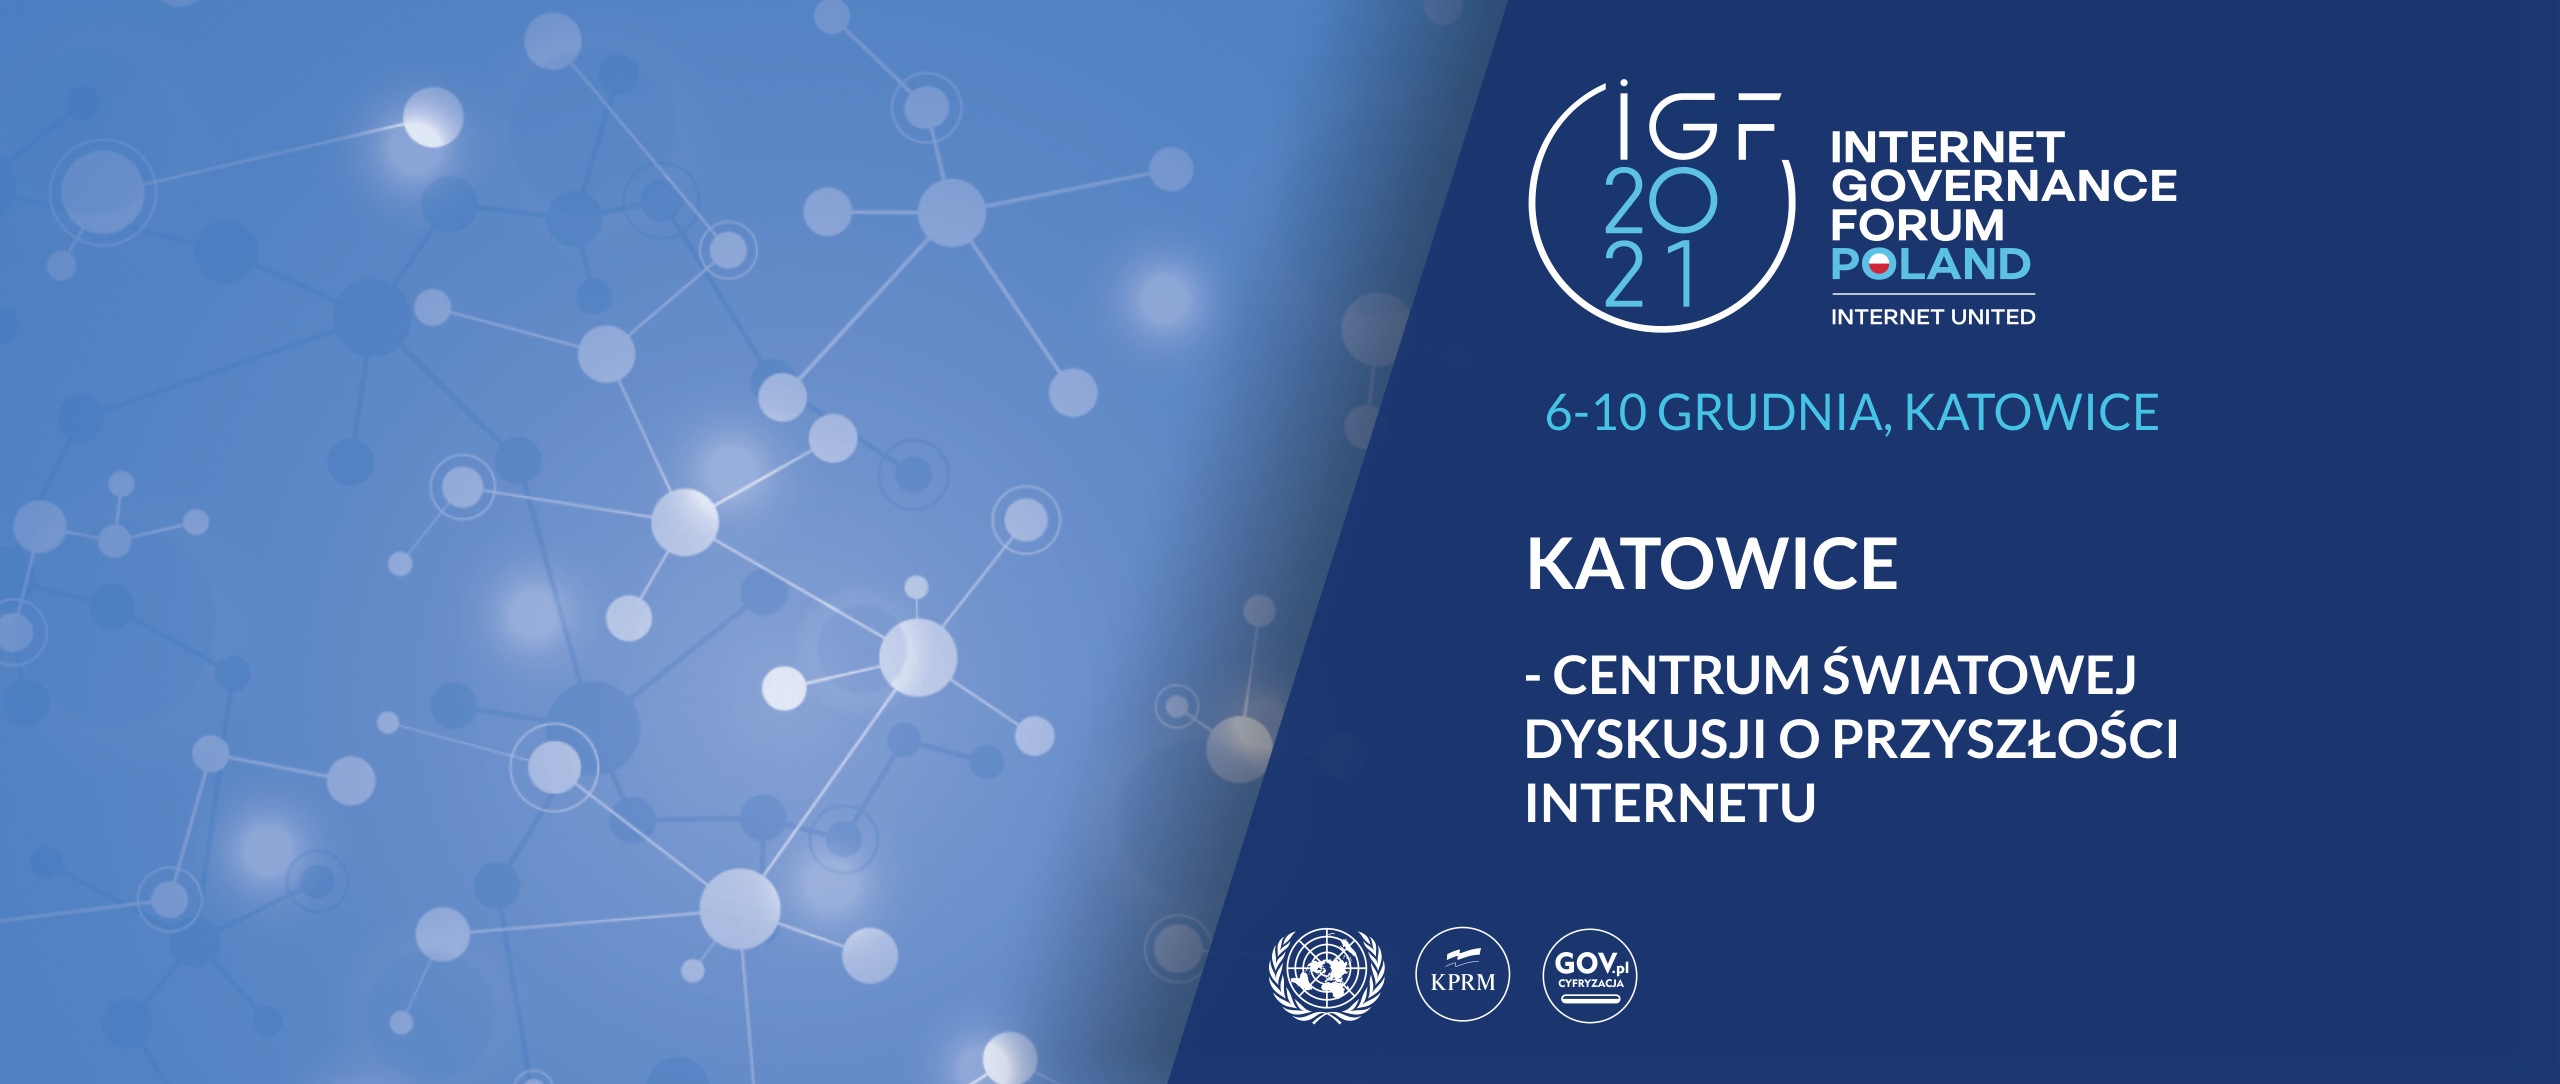 grafika promująca Szczyt Cyfrowy ONZ – IGF 2021